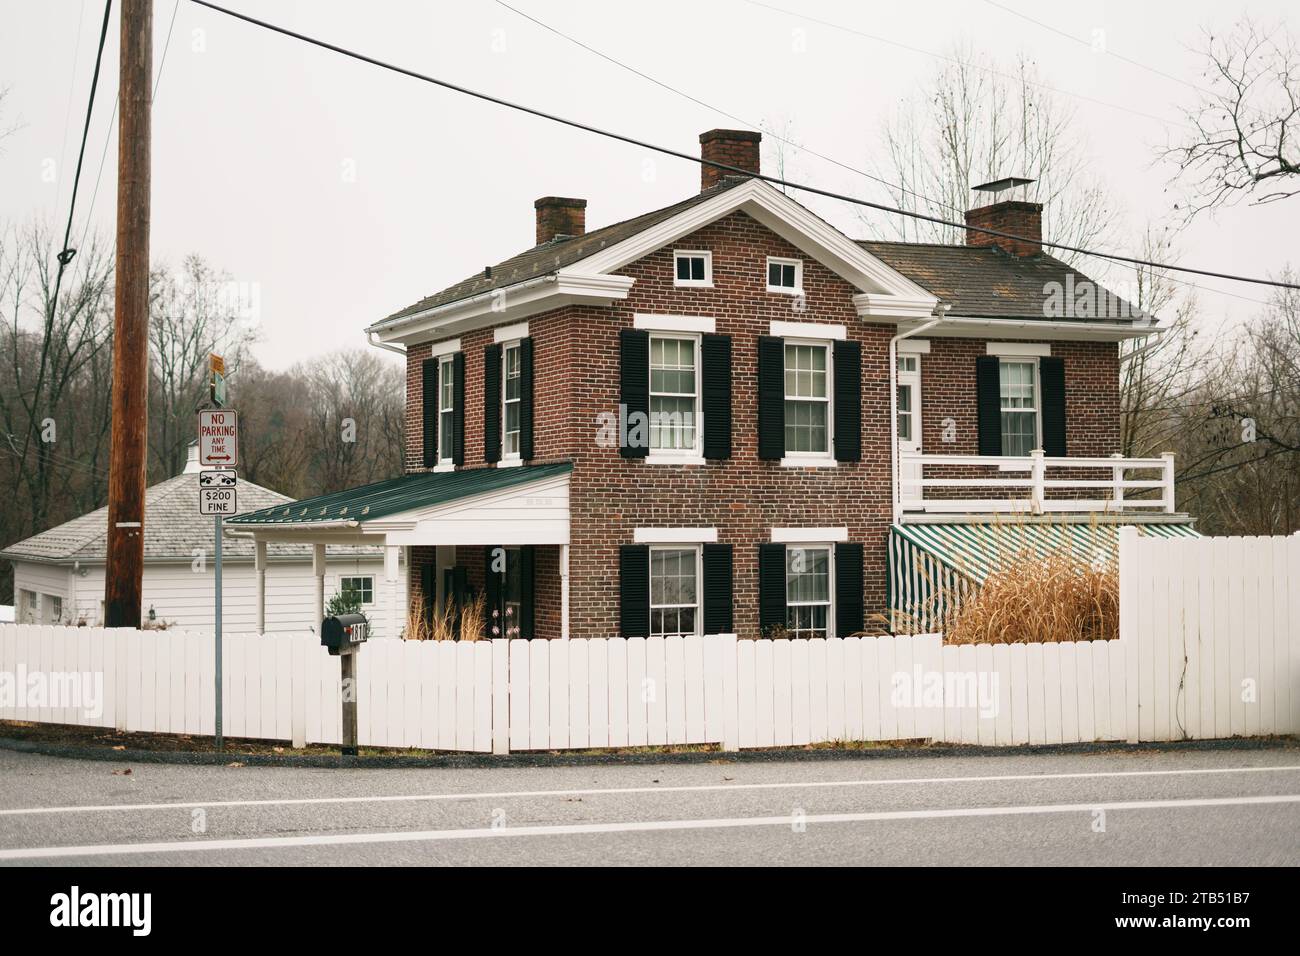 Brick house in Monkton, Maryland Stock Photo